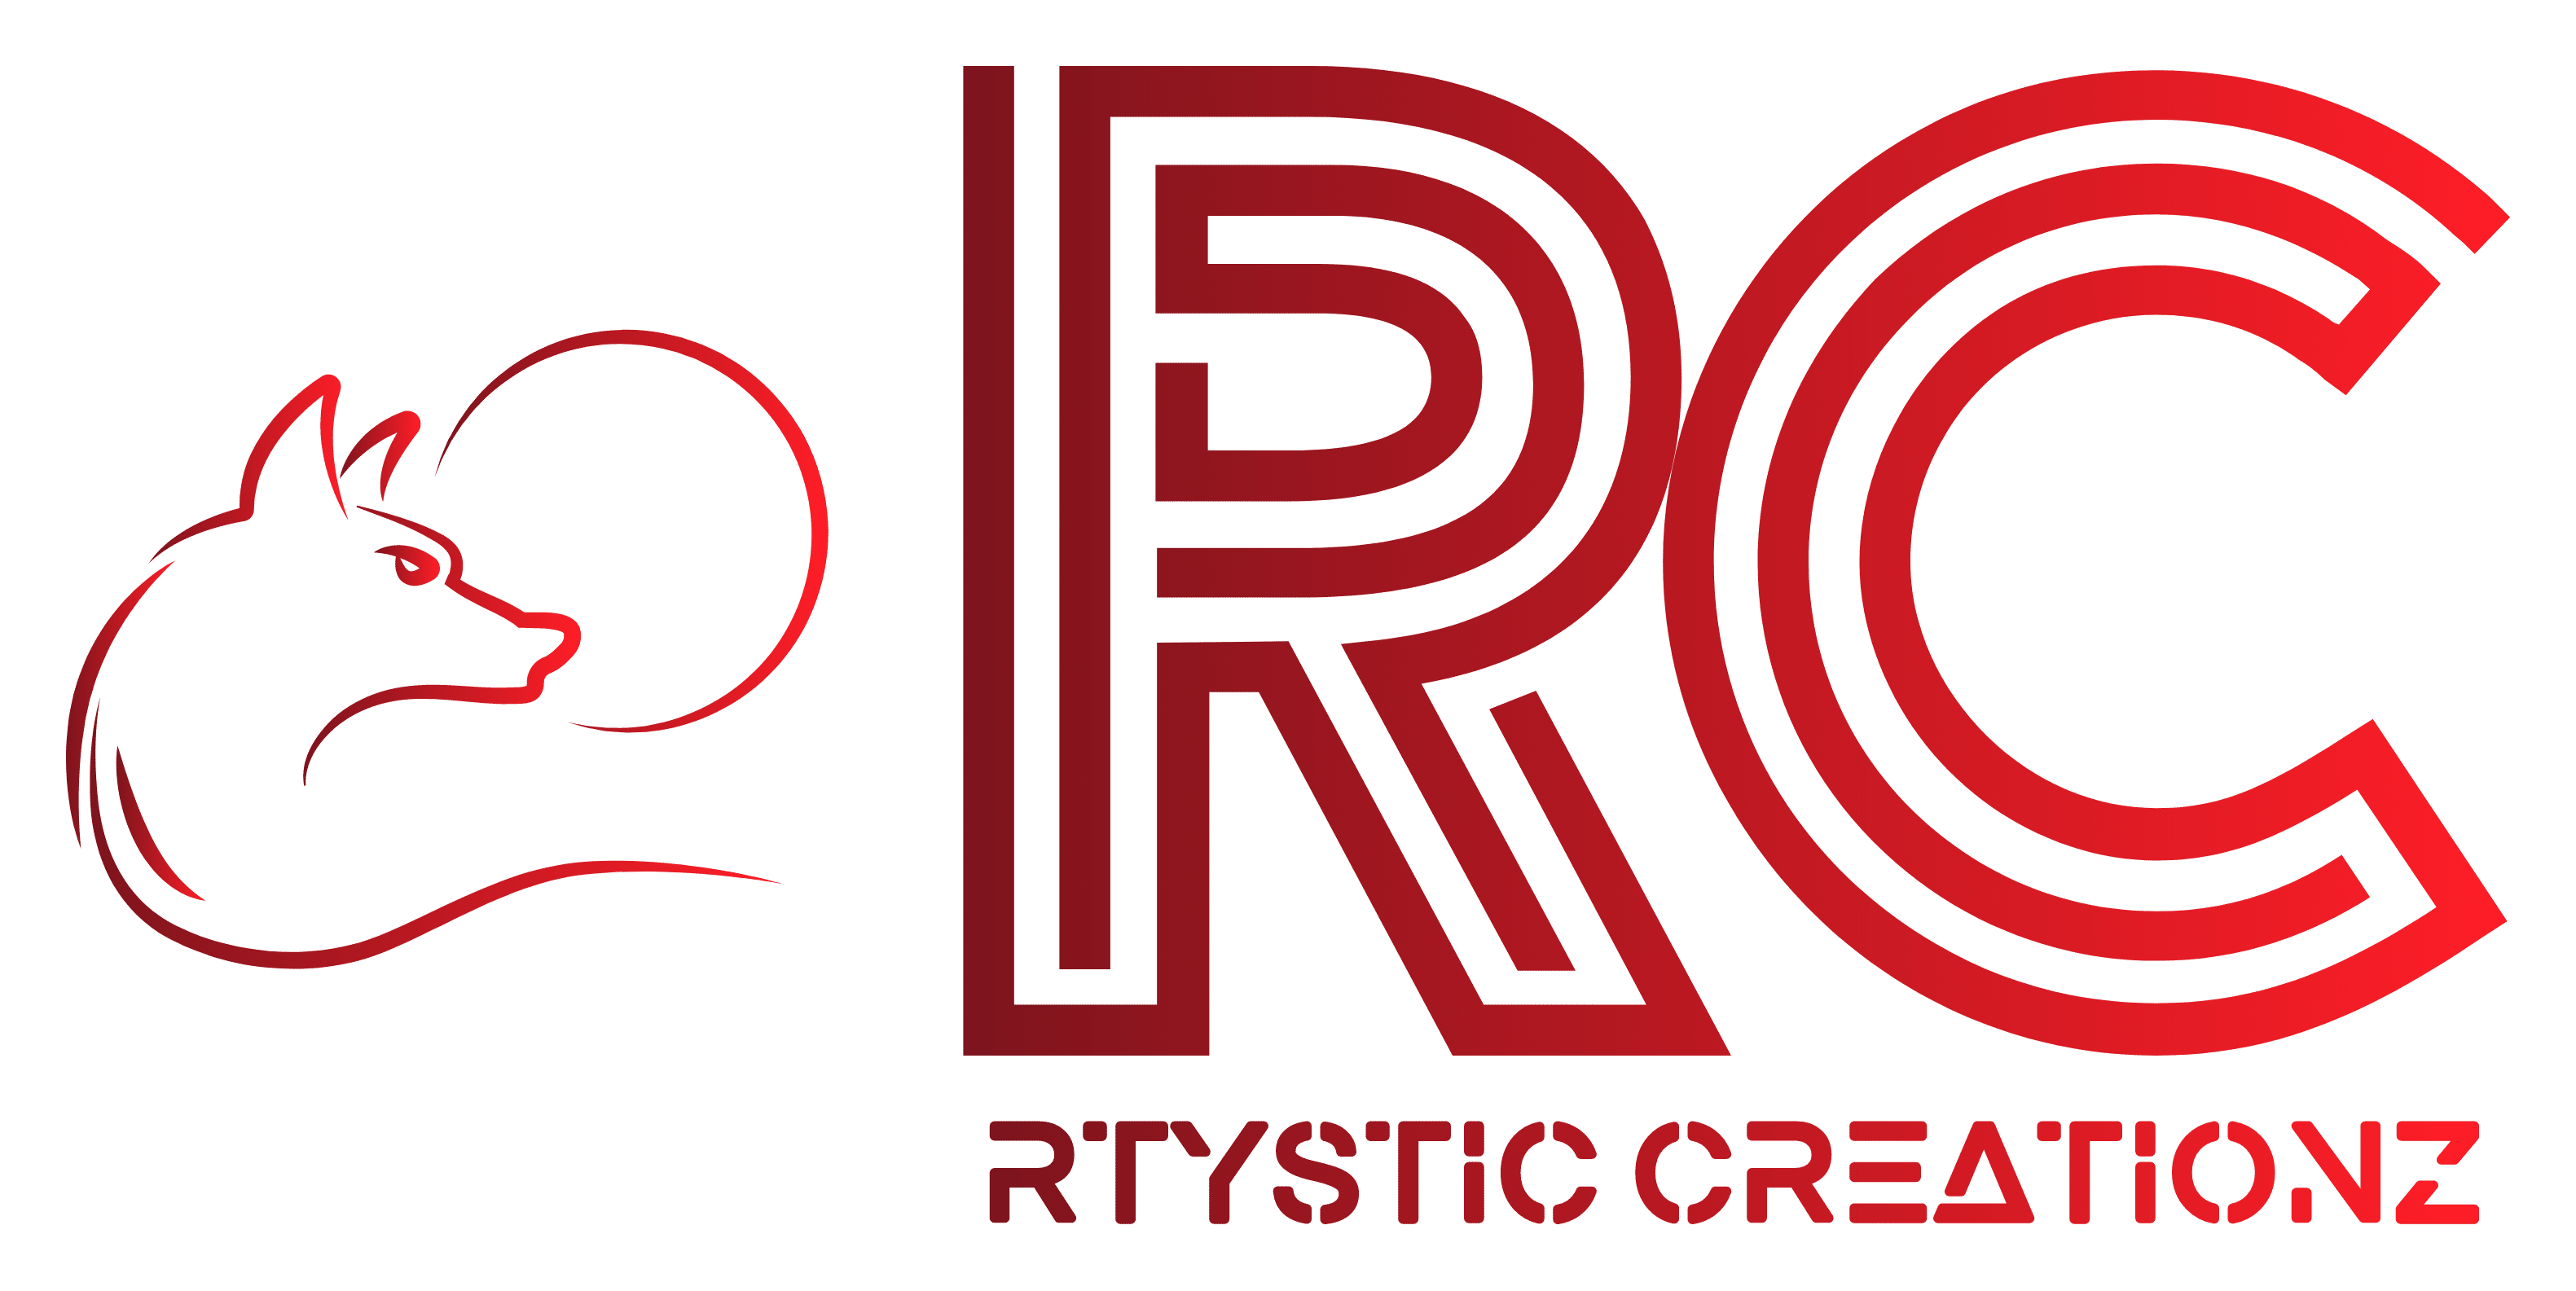 www.rtysticcreationzshop.com